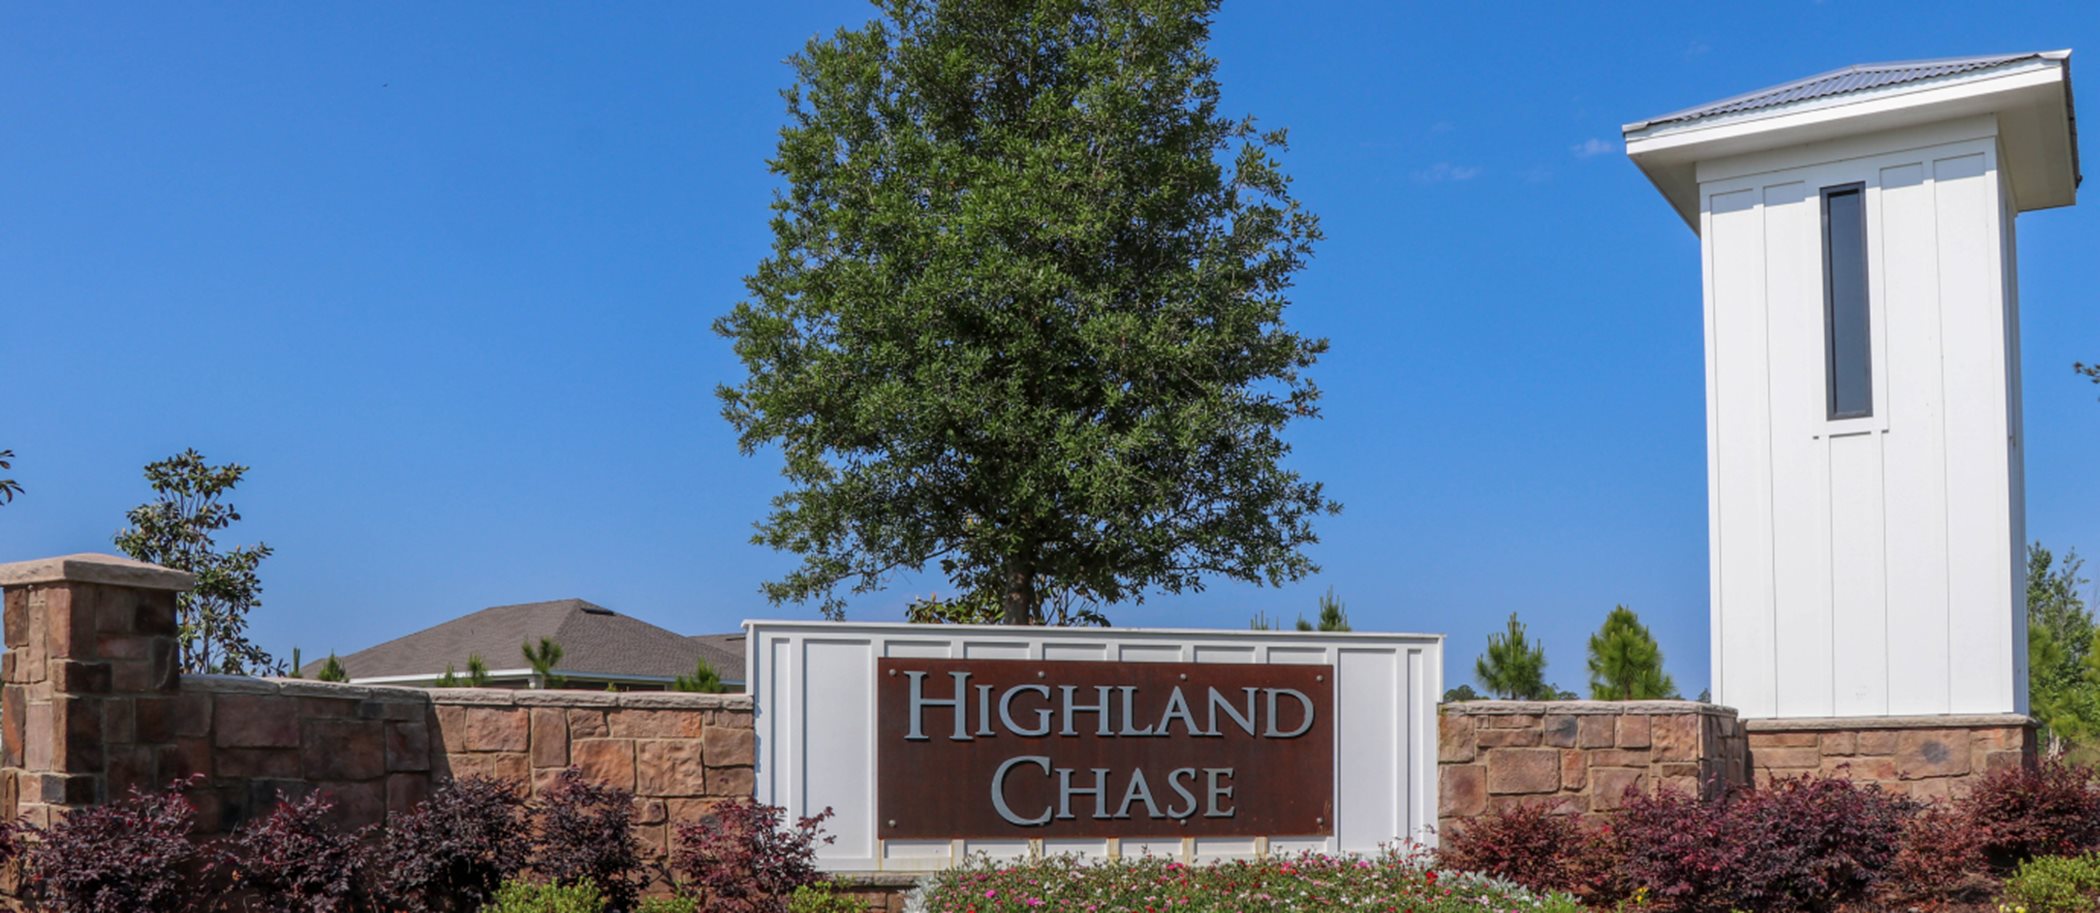 Highland Chase Entrance